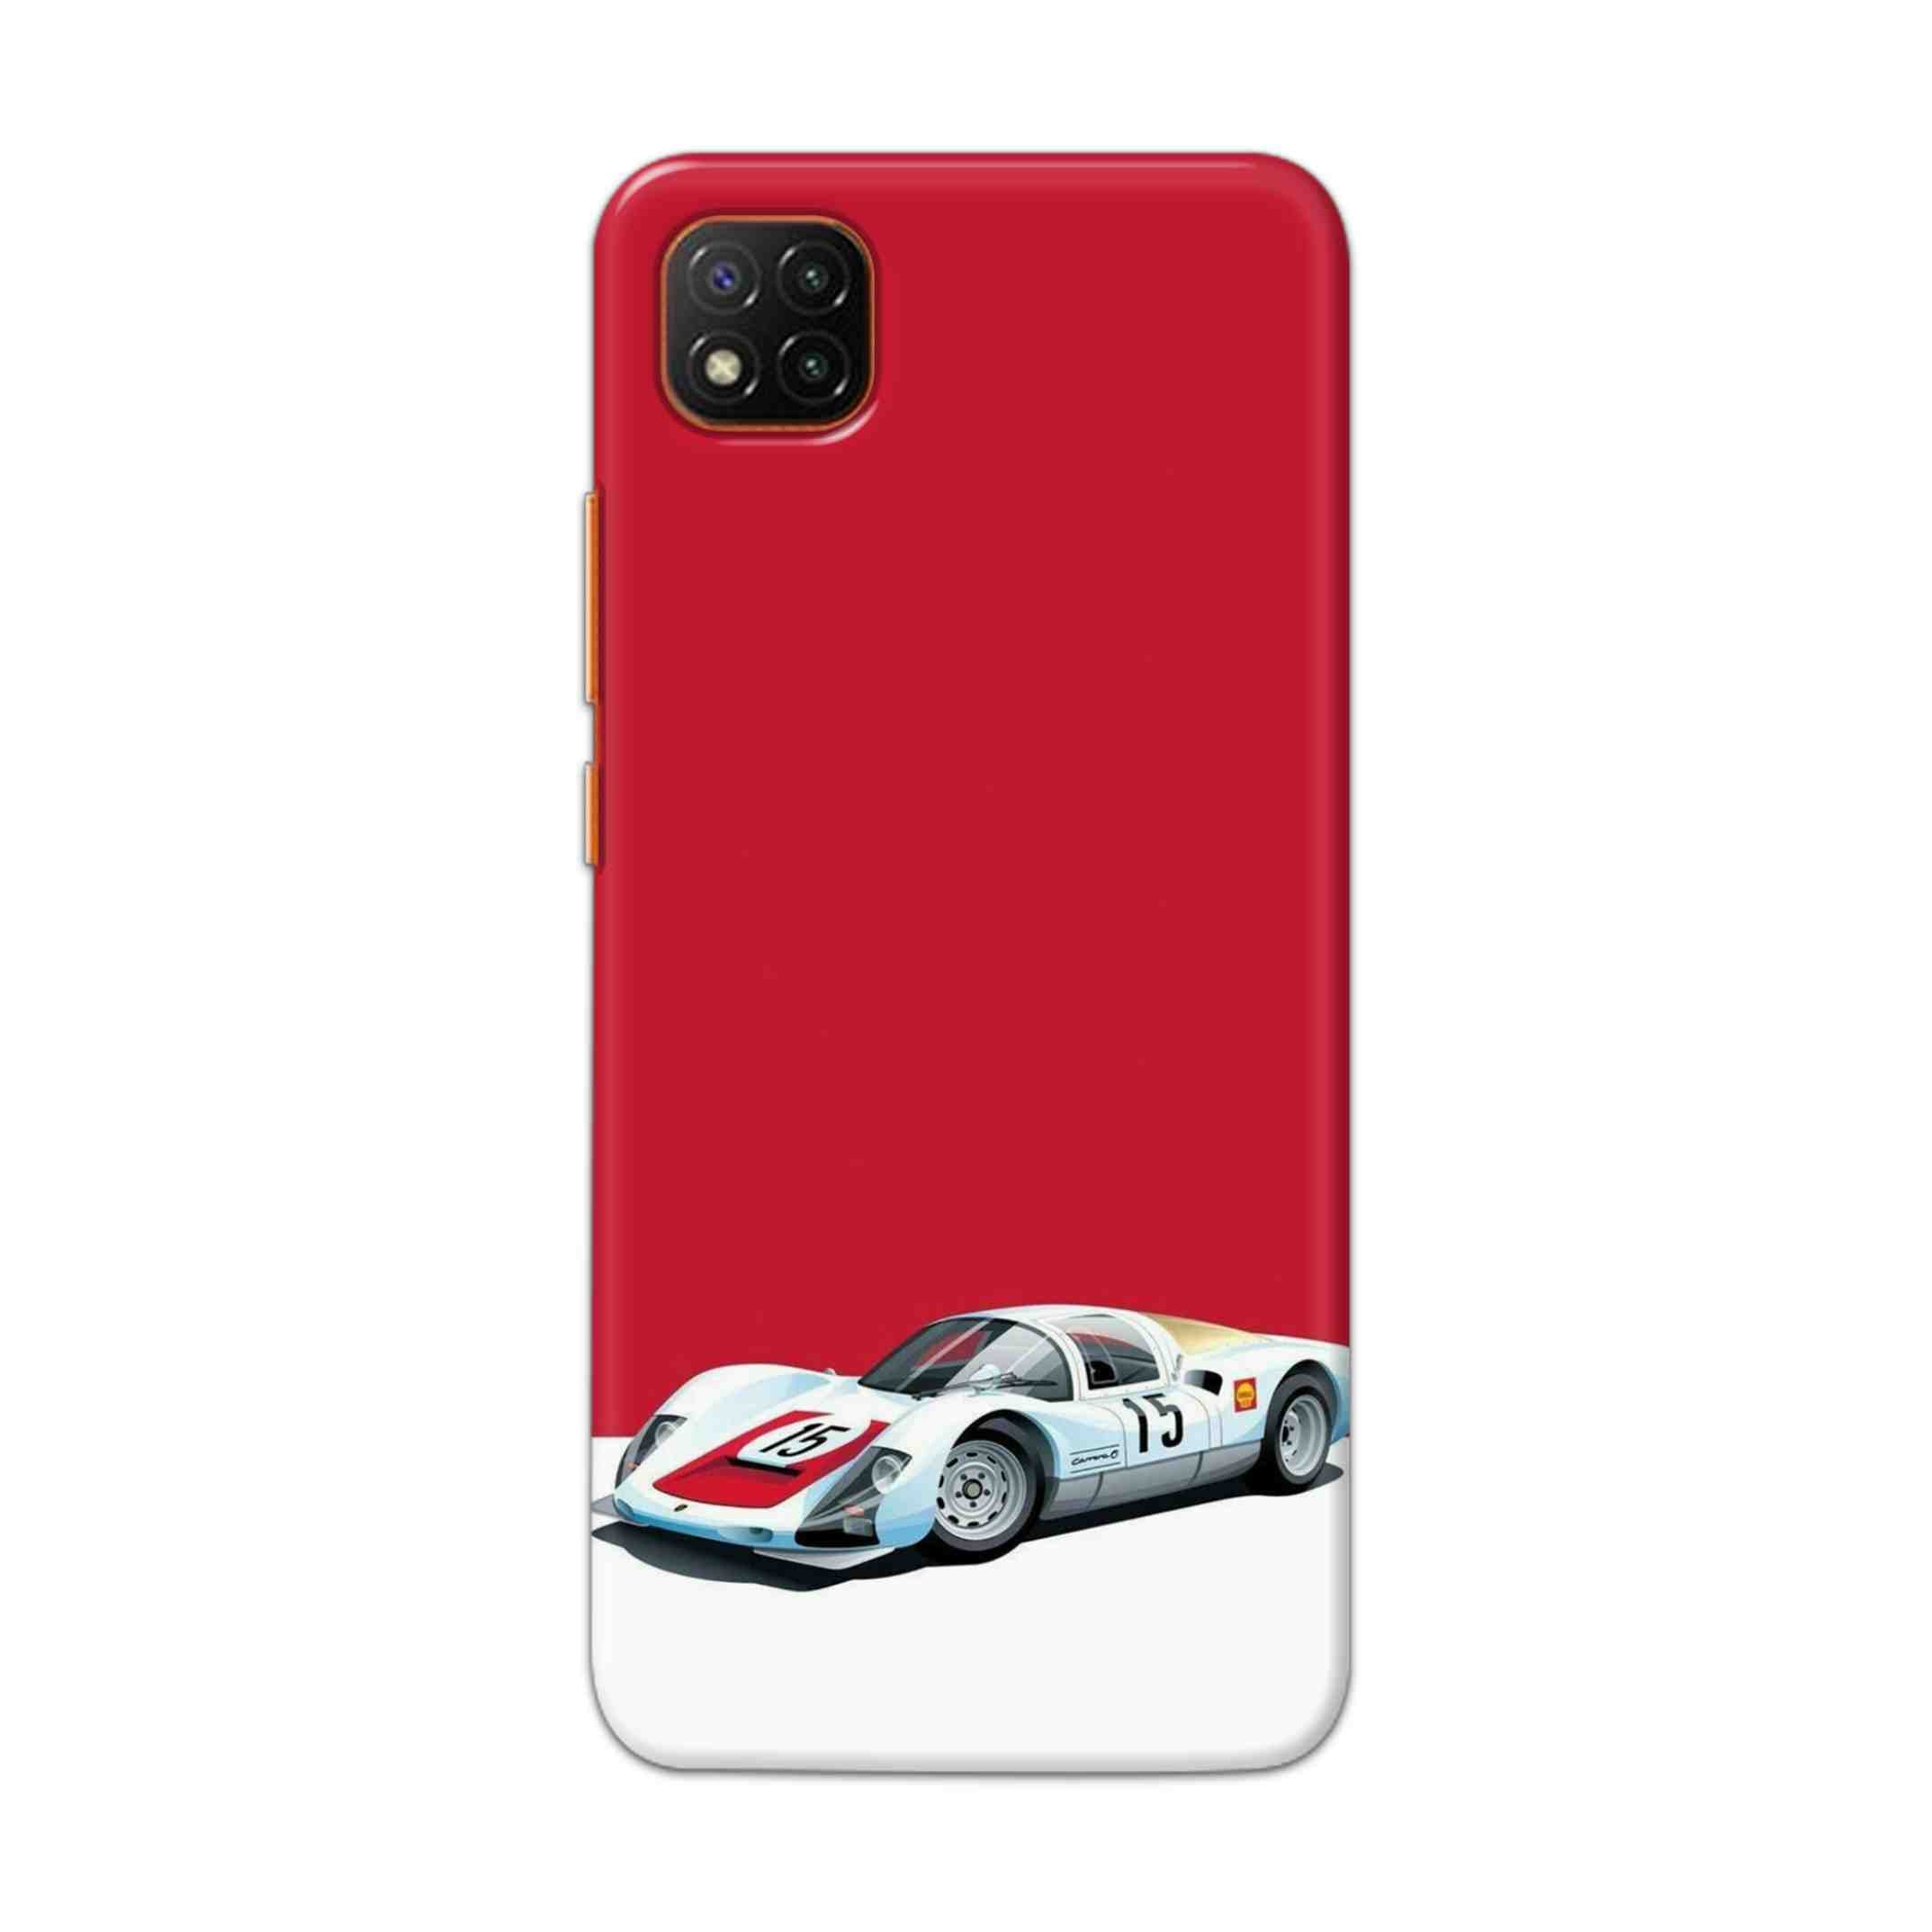 Buy Ferrari F15 Hard Back Mobile Phone Case Cover For Mi 9C Online